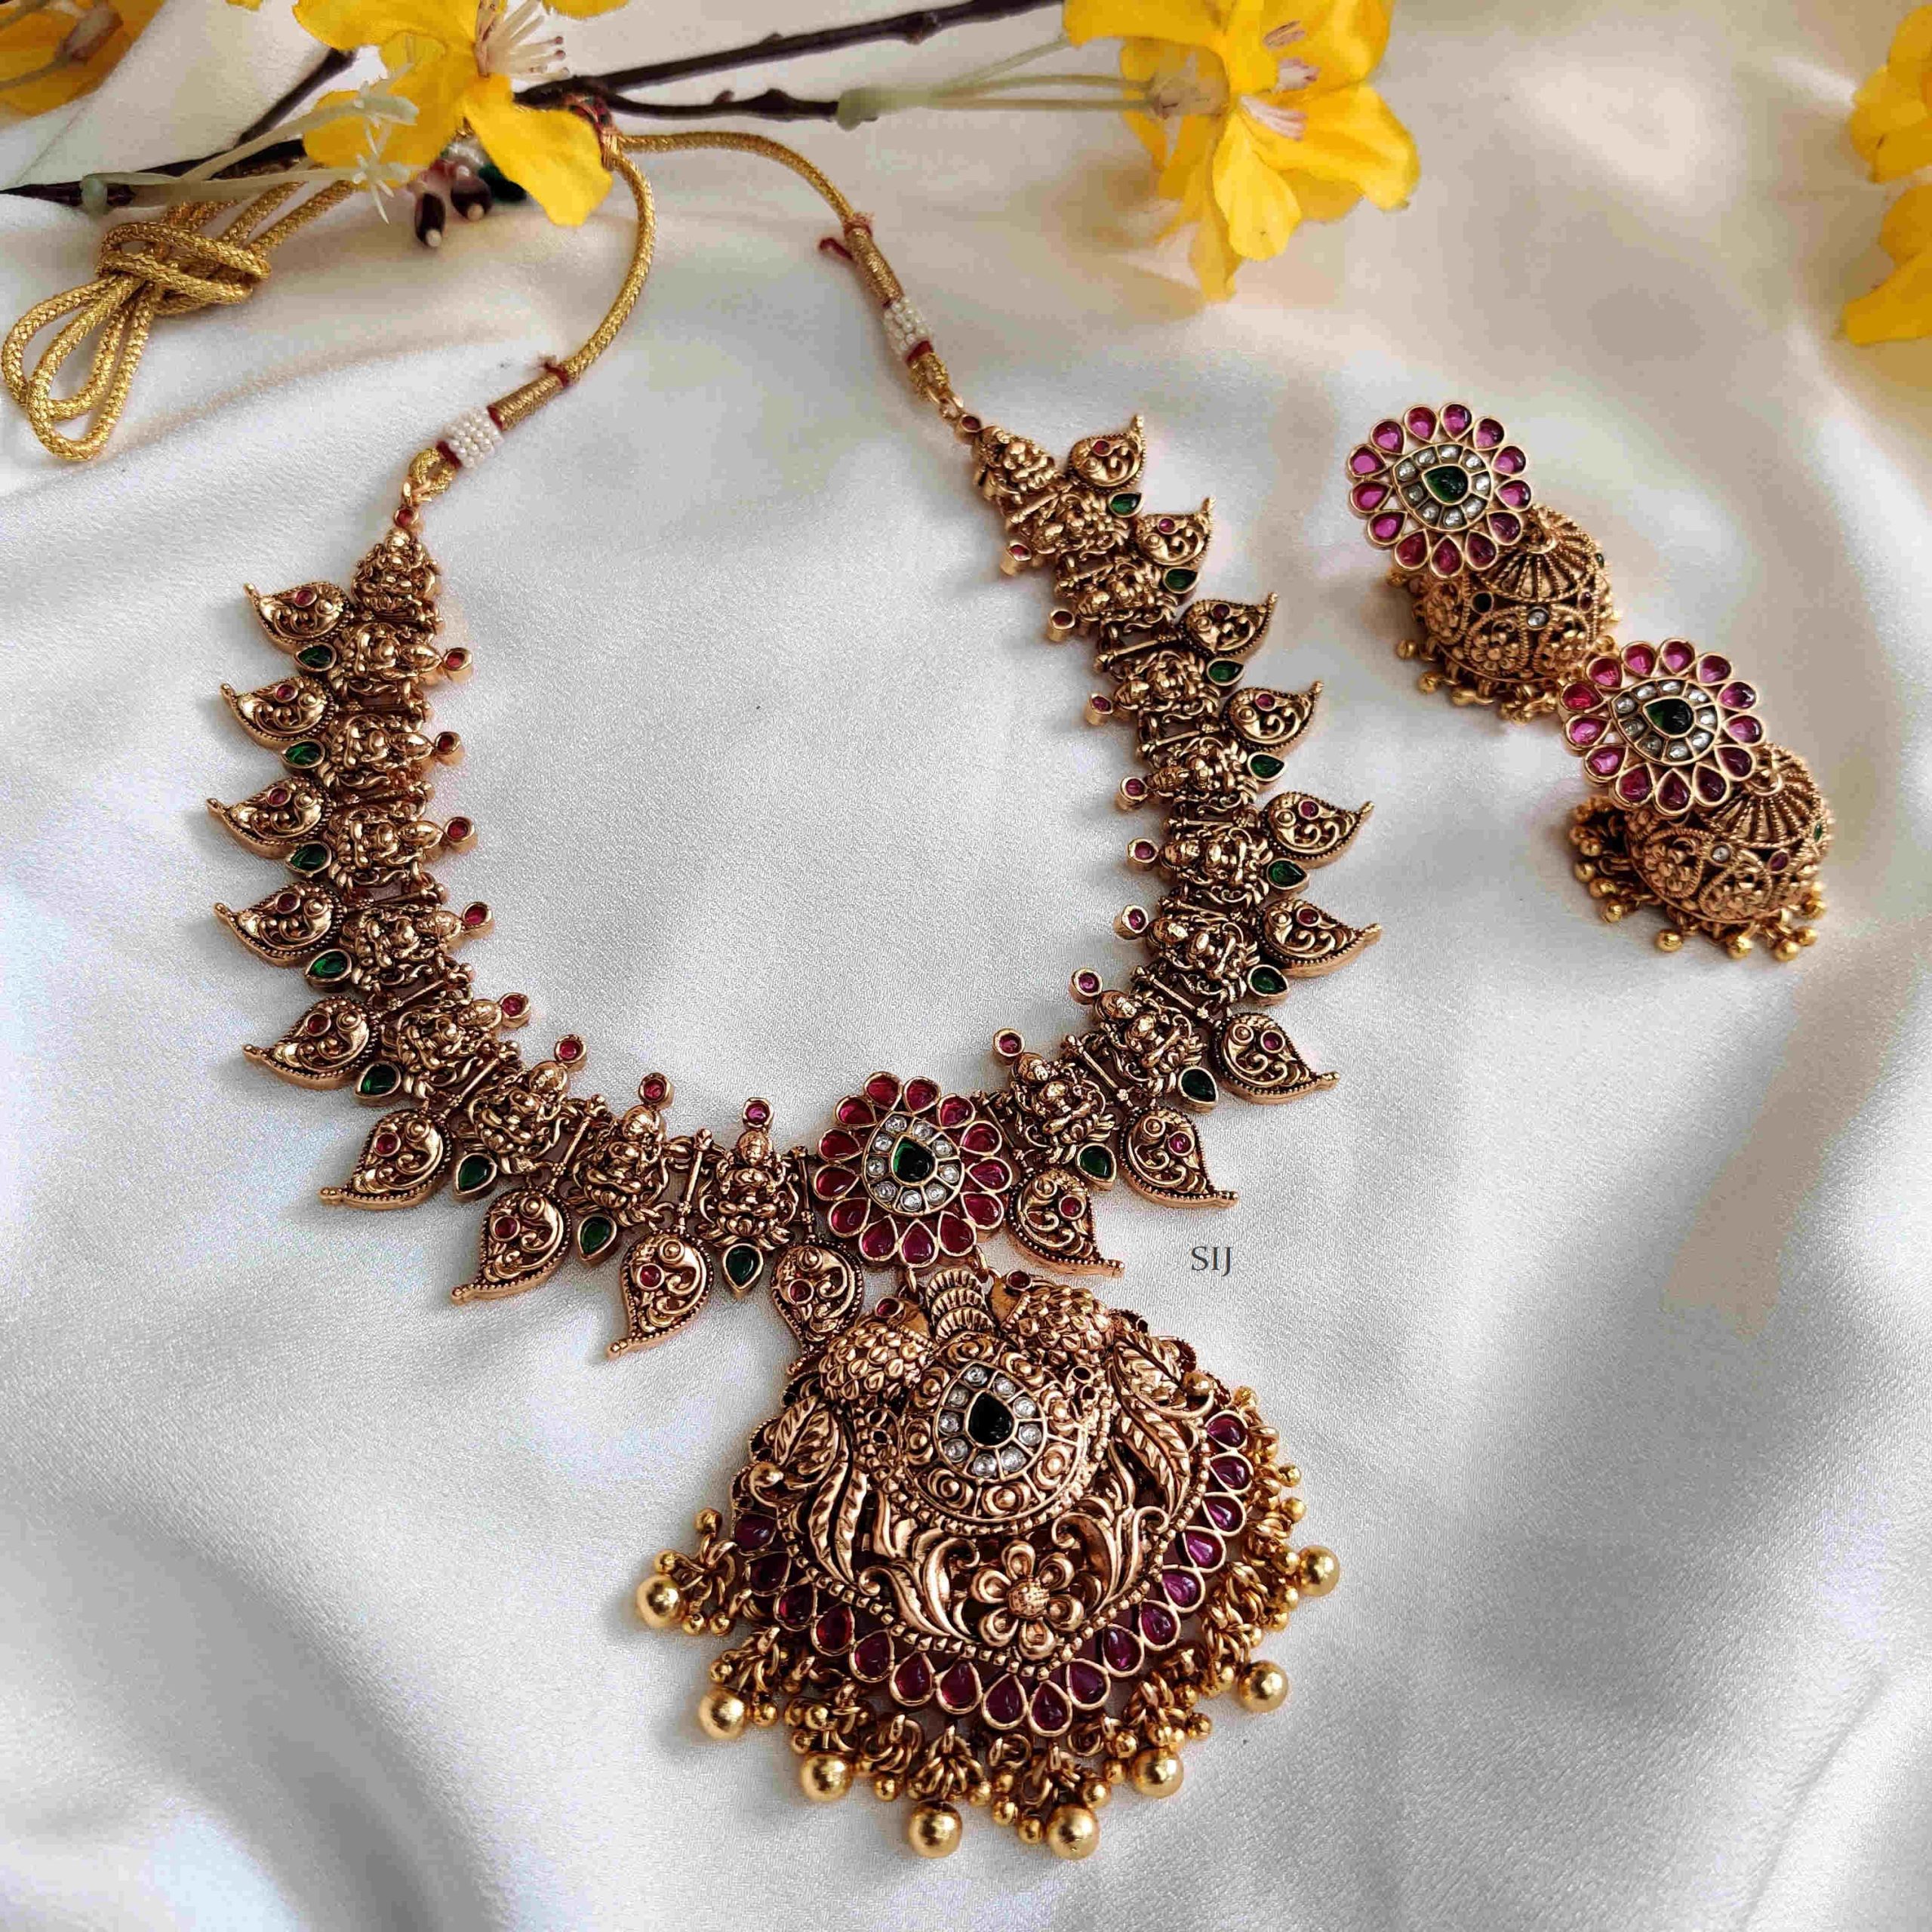 Elite Lakshmi Motifs Necklace - South India Jewels